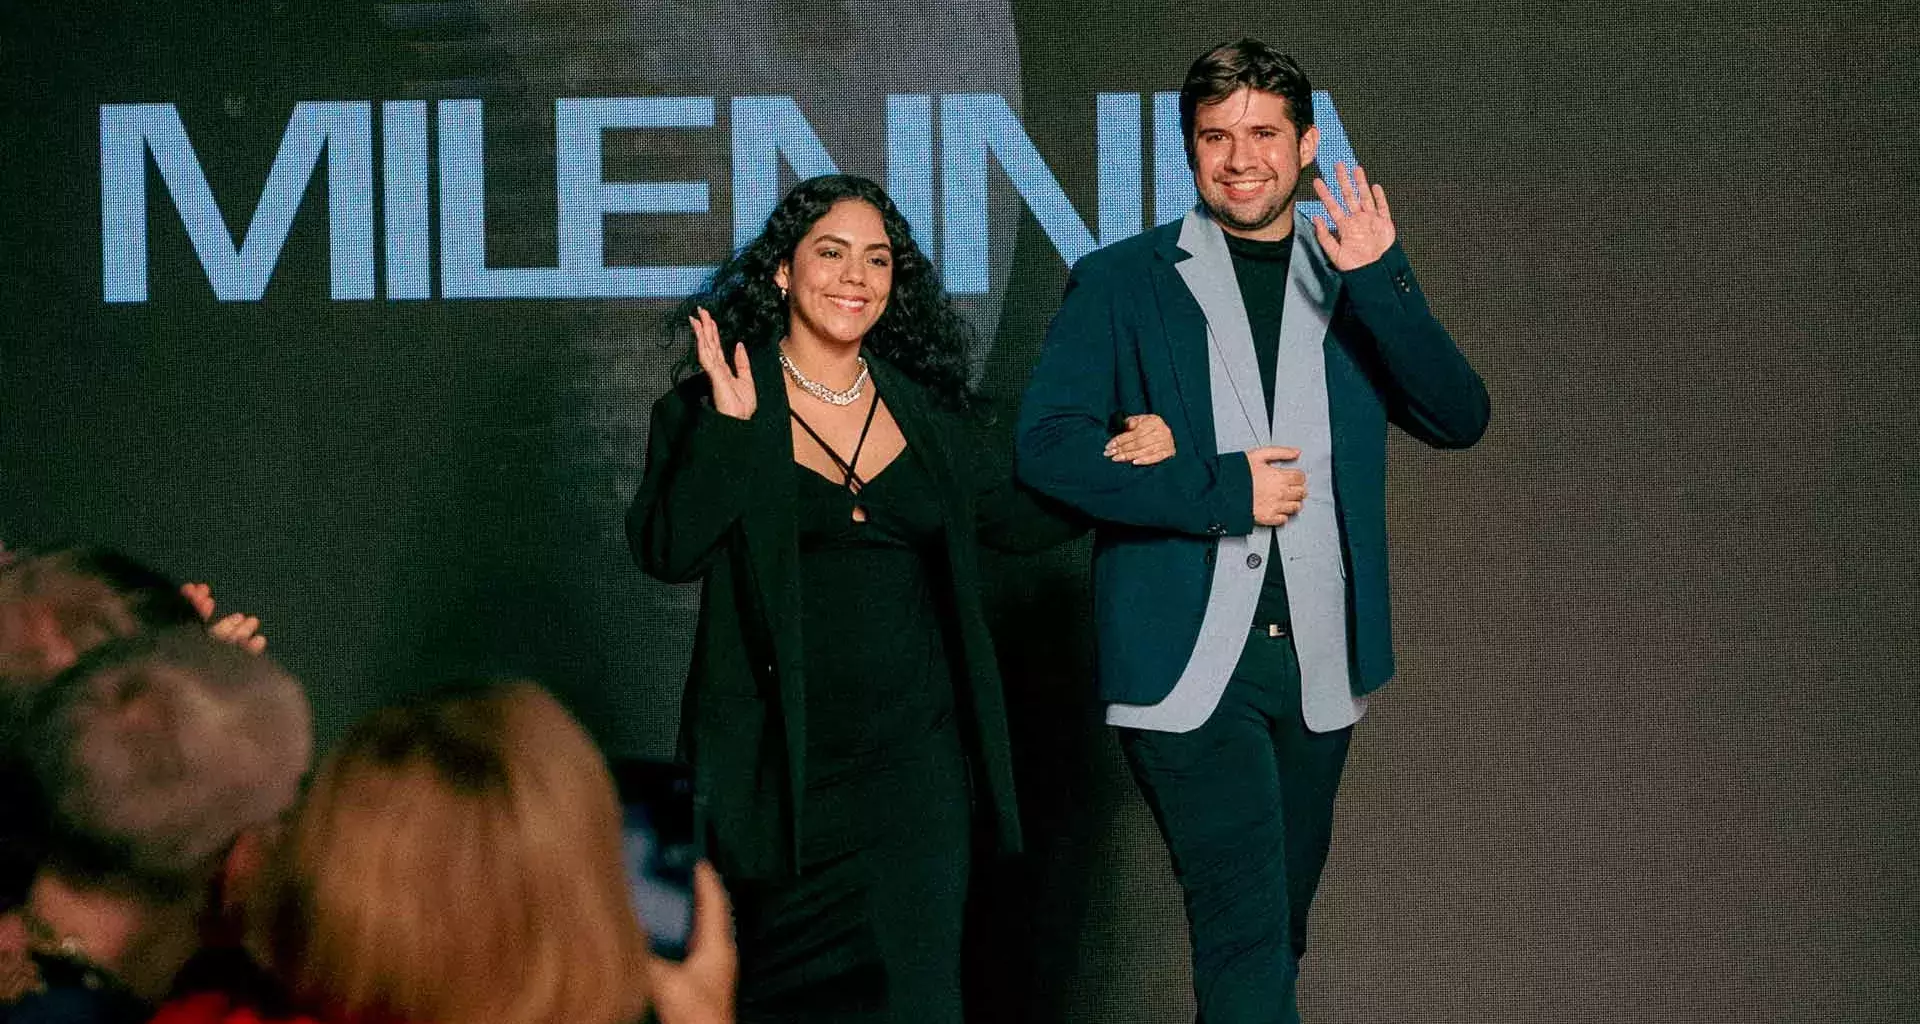 El EXATEC Luis Treviño y su socia desfilan en Vancouver Fashion Week, realizado en Canadá.